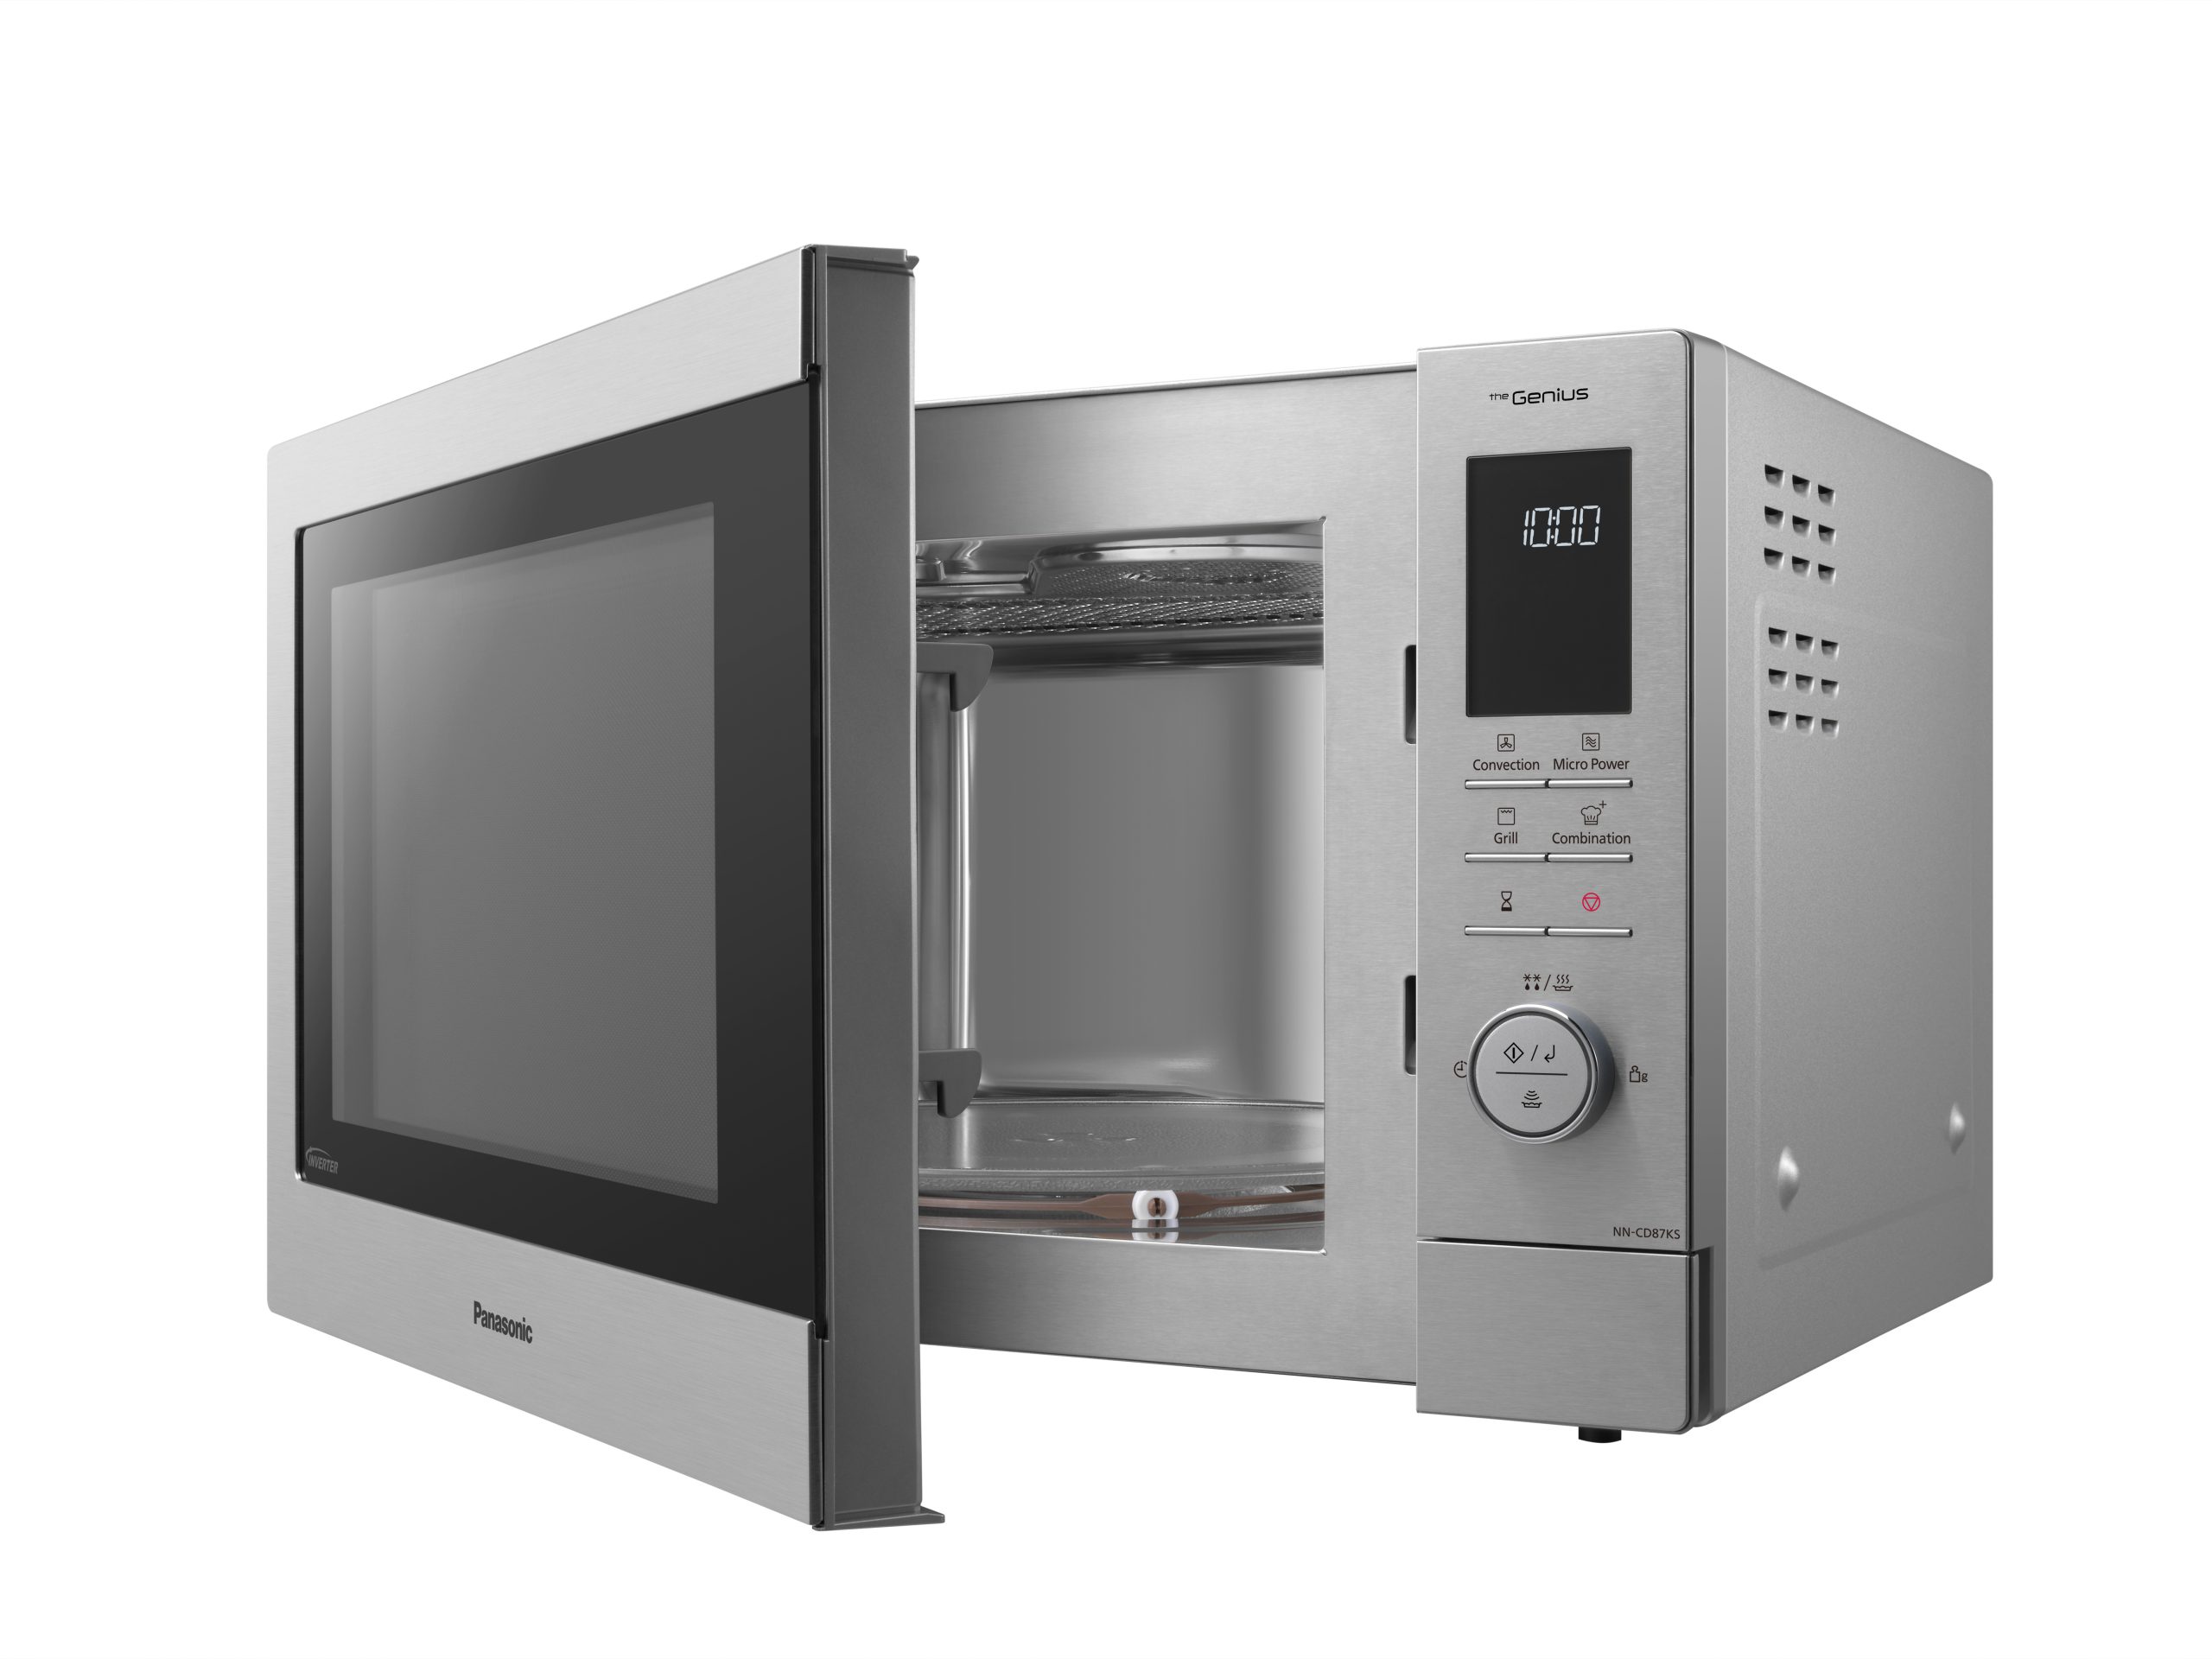 Уровень свч. Panasonic Microwave Oven 1000w. СВЧ Panasonic Inverter 27l. Панасоник микроволновая печь с грилем Старая модель. Combi Microwave Oven.